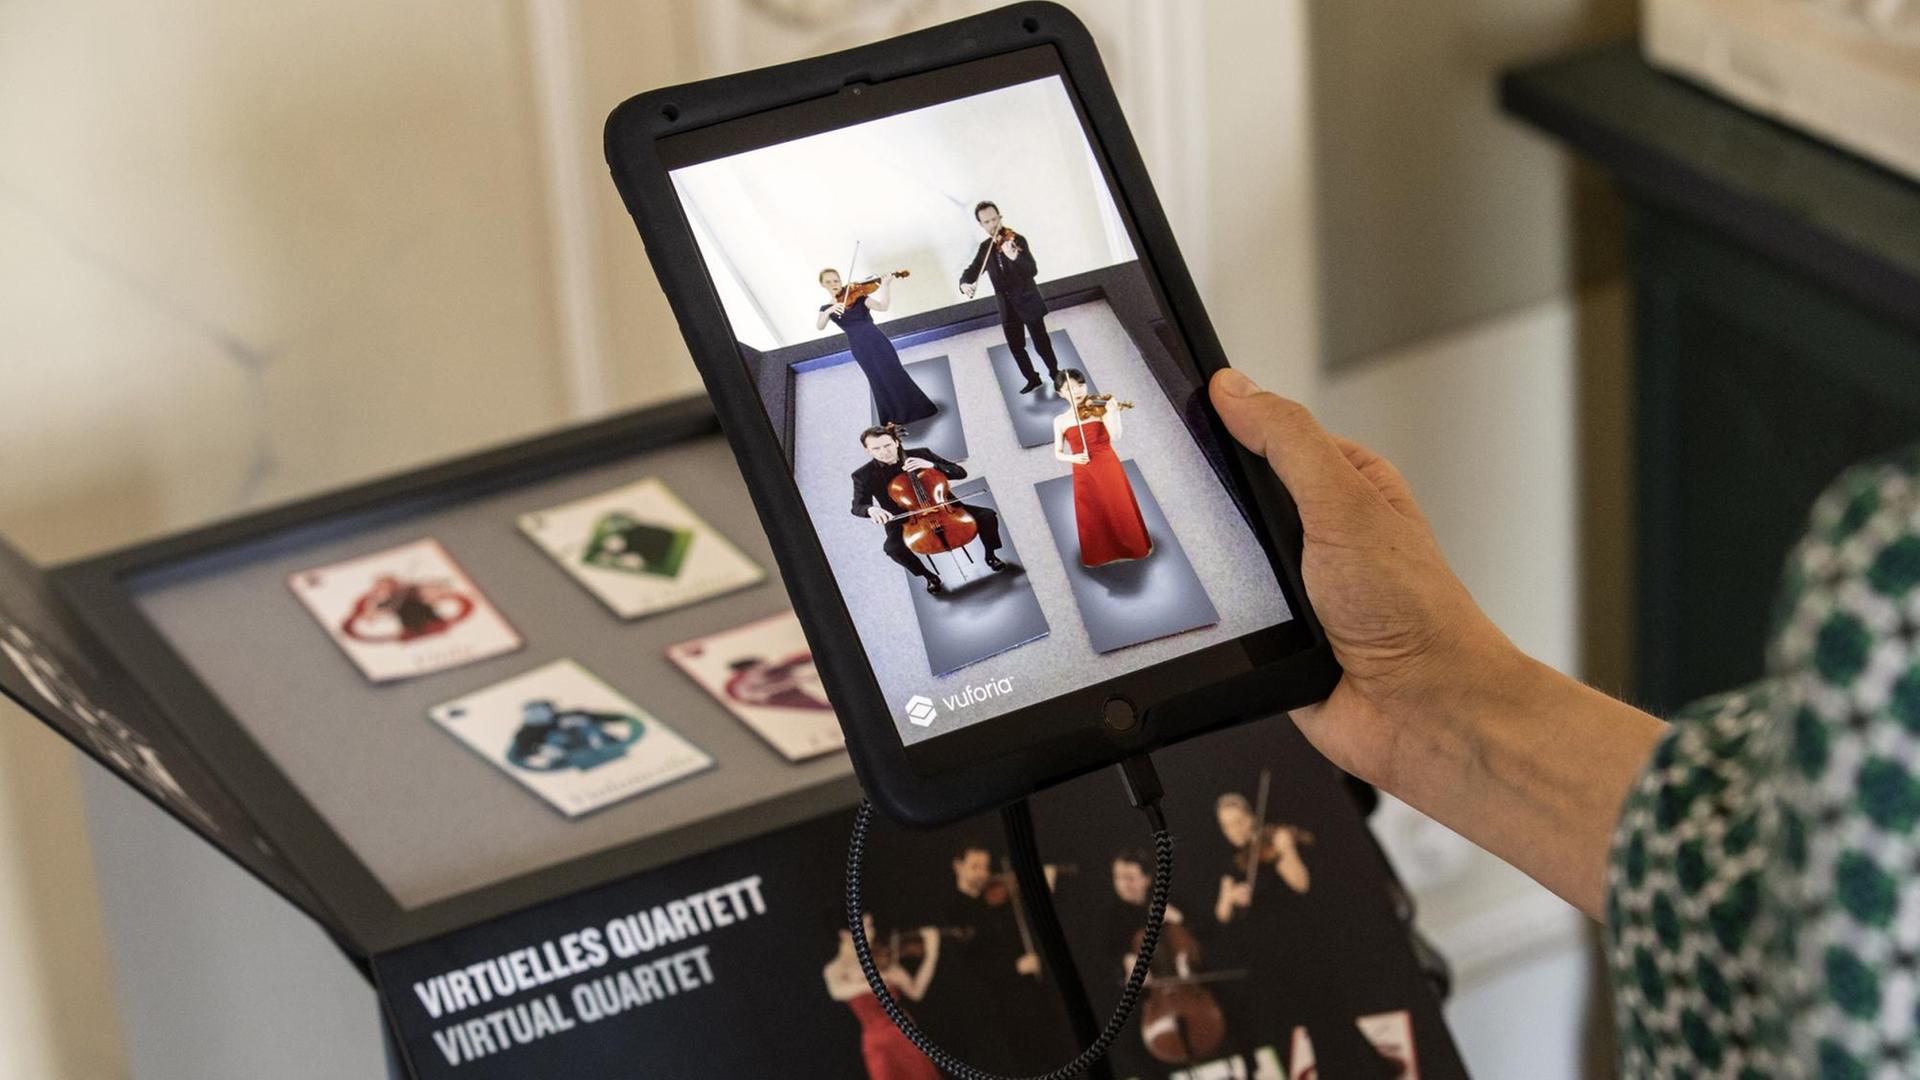 Besucher testen in Berlin die neue App "Konzerthaus Plus". Diese lässt via Augmented-Reality-Technologie vier virtuelle Musiker auf einem Tablet erscheinen, die den Anfang von Franz Schuberts "Der Tod und das Mädchen" spielen.